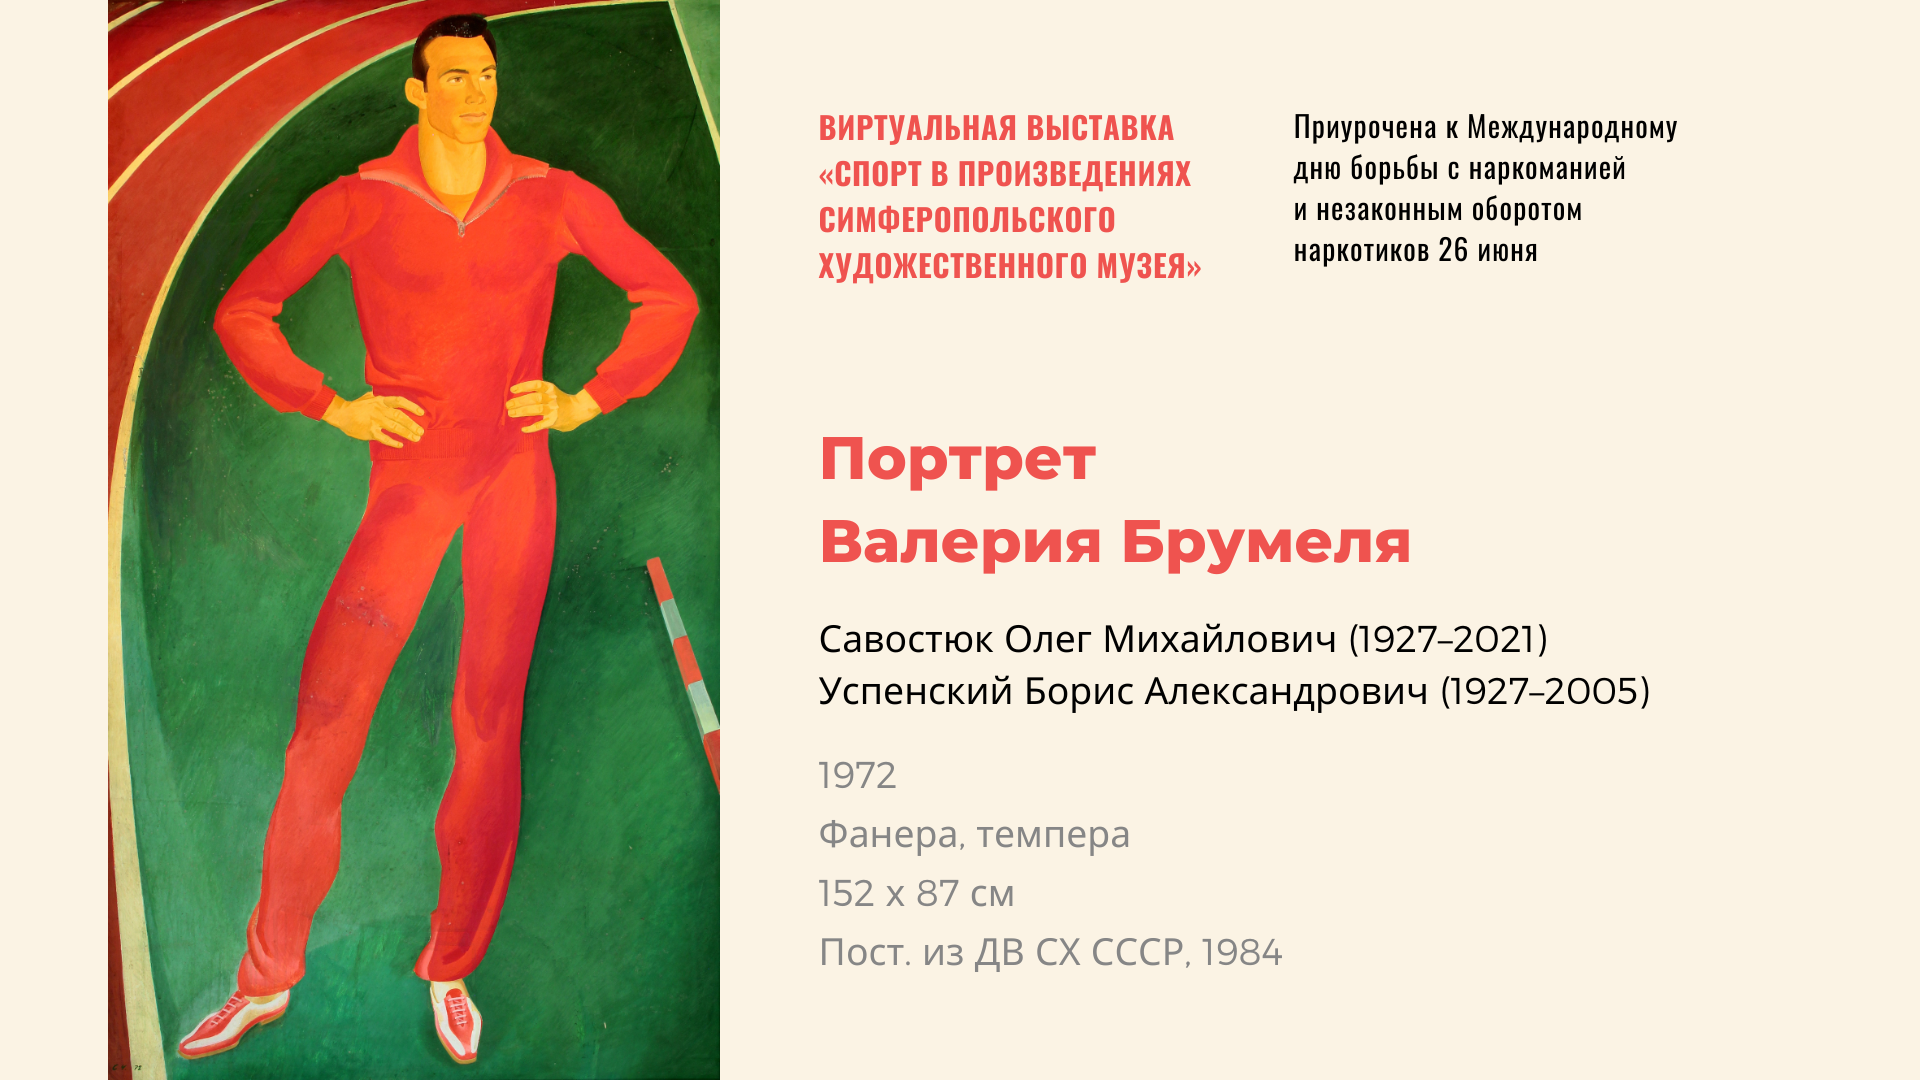 Виртуальная выставка «Спорт в произведениях Симферопольского художественного музея»